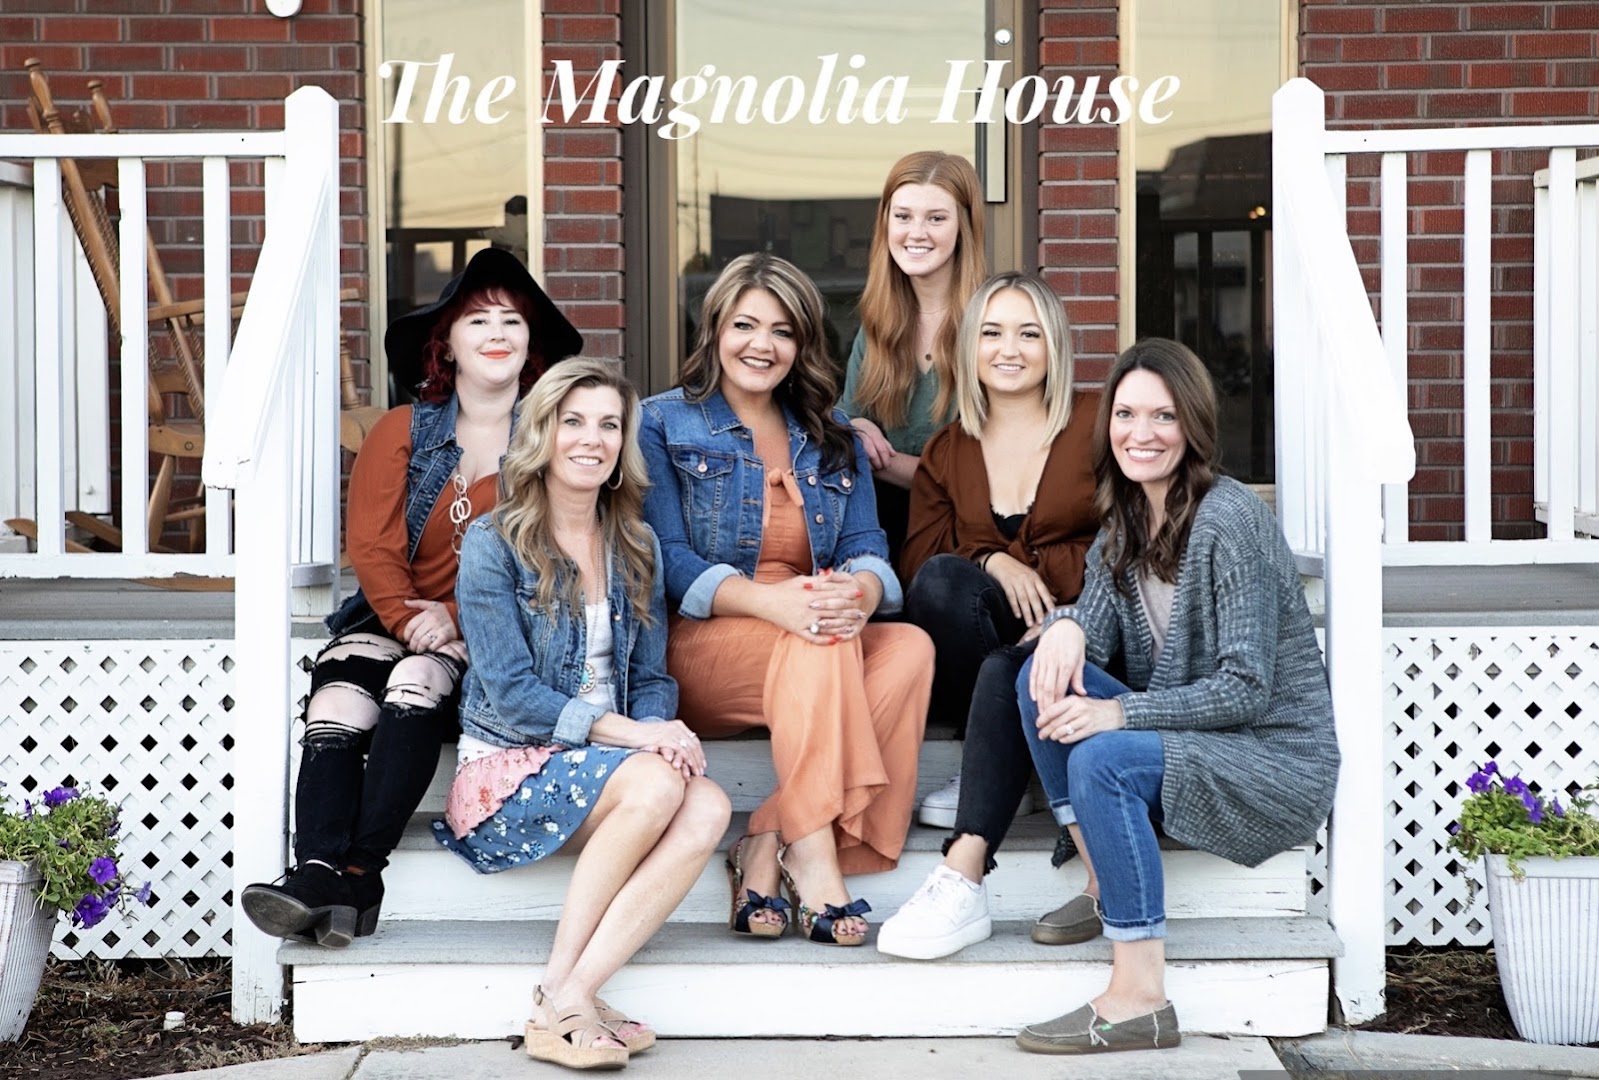 The Magnolia House Salon and Spa